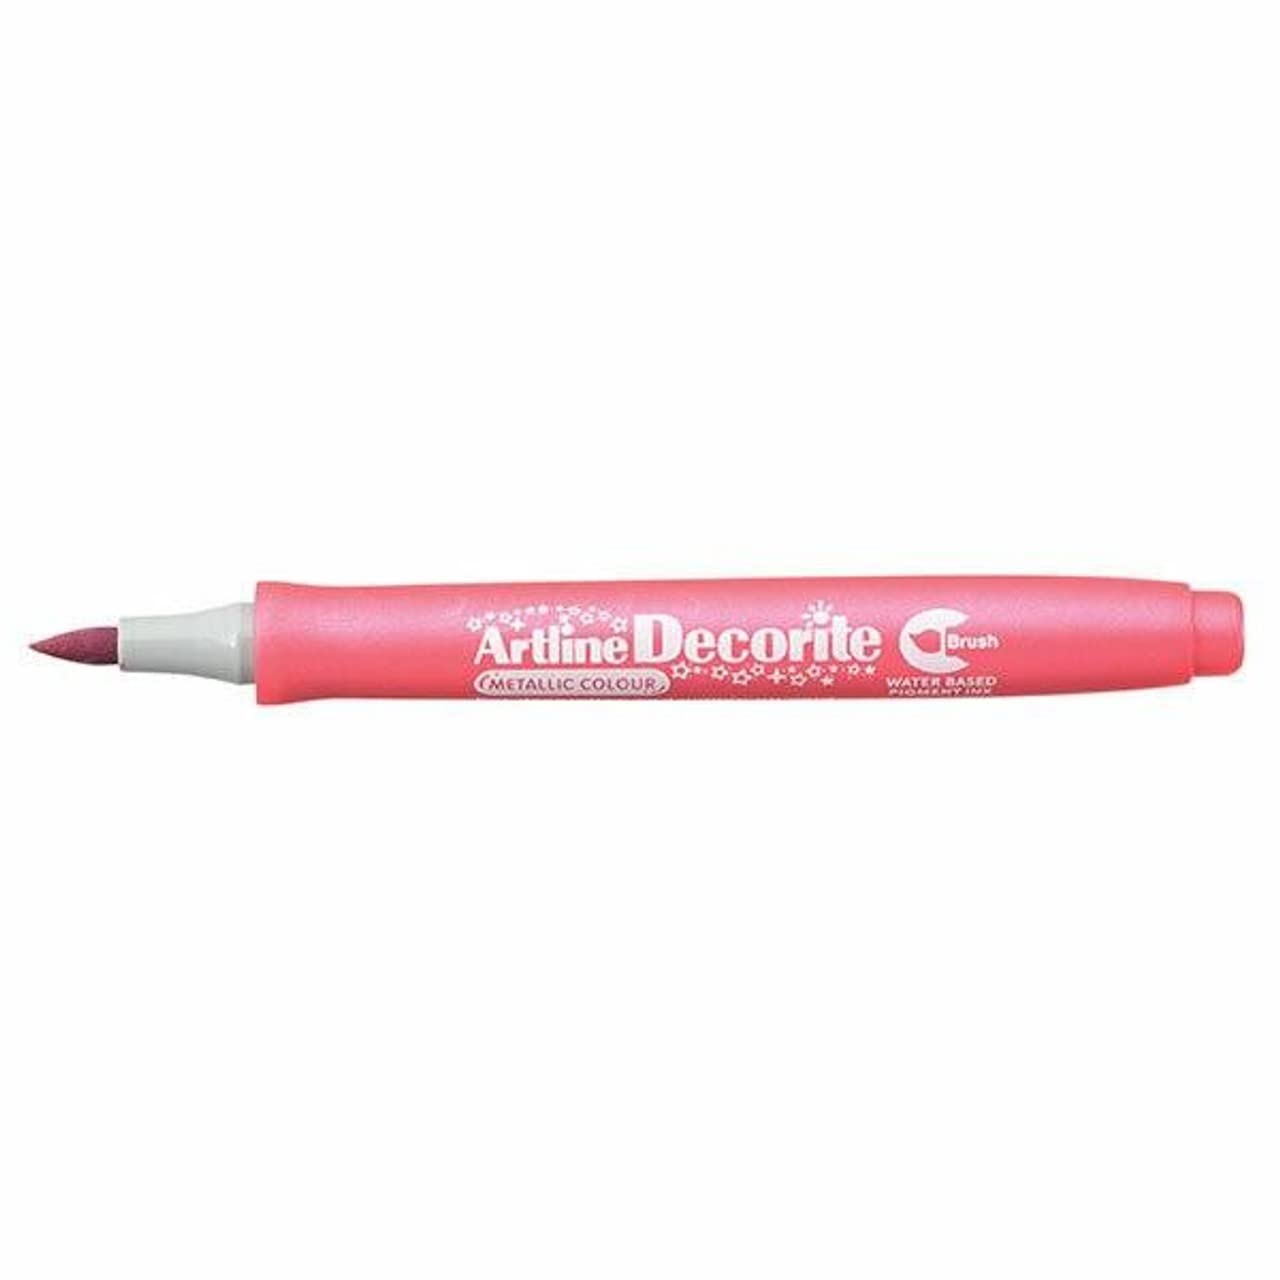 Marker decorite punta pennello rosa metal